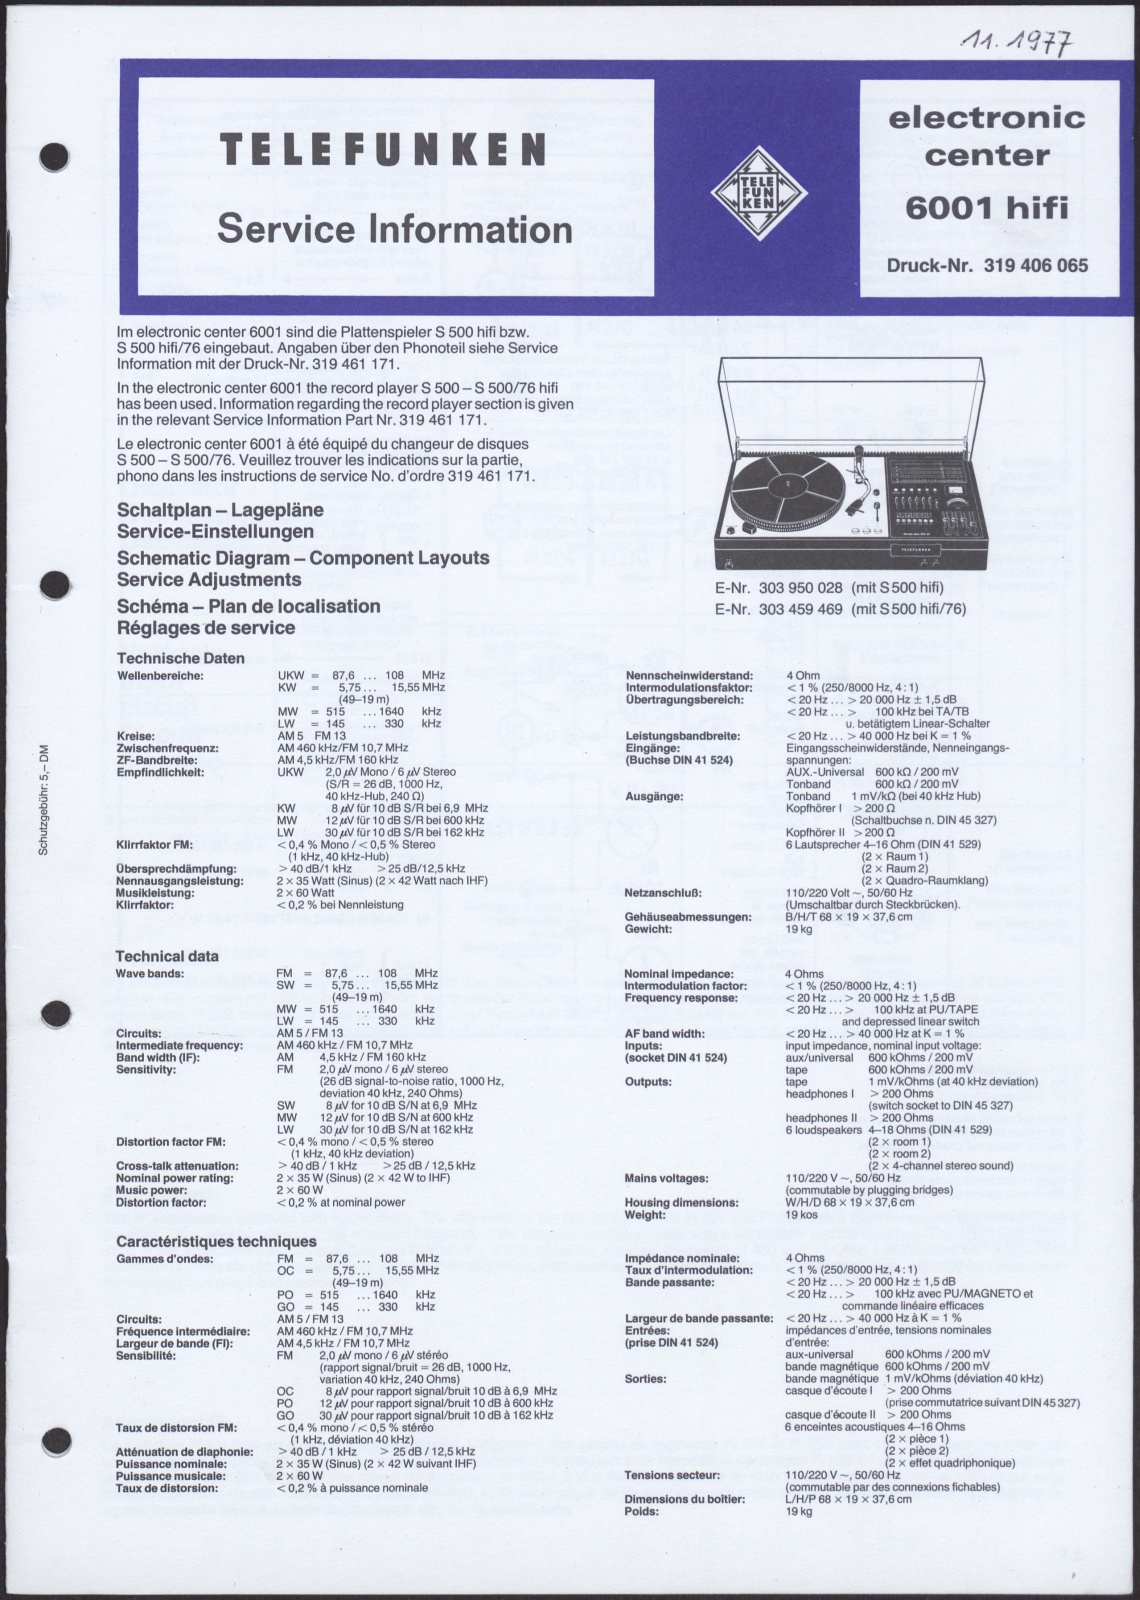 Bedienungsanleitung: Telefunken Service Information für den Plattenspieler Telefunken electronic center 6001 hifi (Stiftung Deutsches Technikmuseum Berlin CC0)